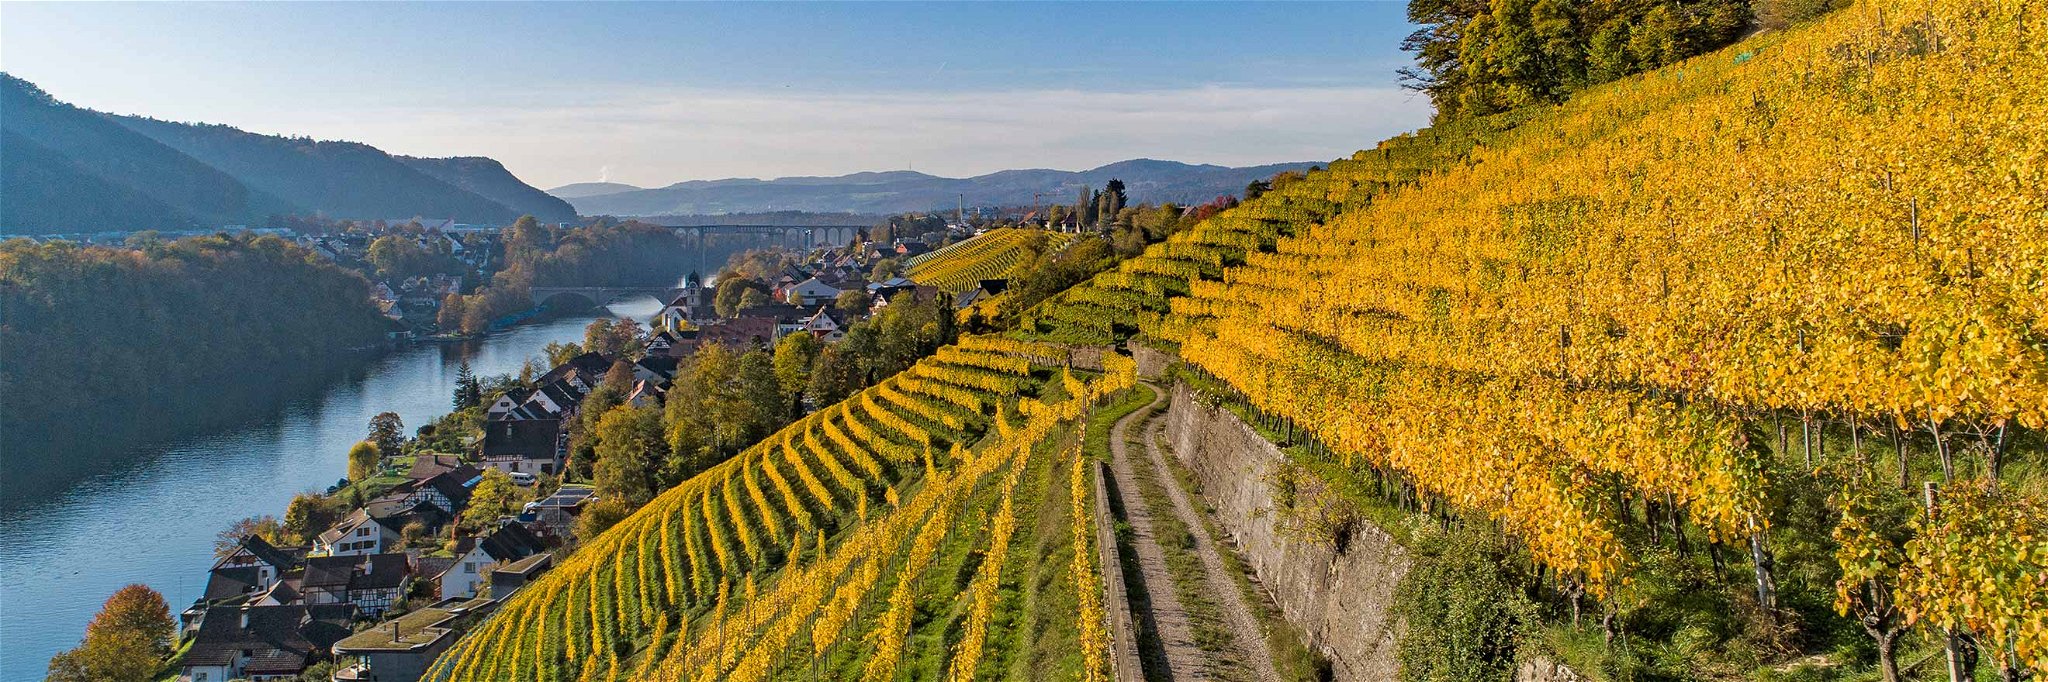 Der malerische Stadtberg über dem Rhein in Eglisau gehört zu den spektakulärsten Reblagen der Schweiz.